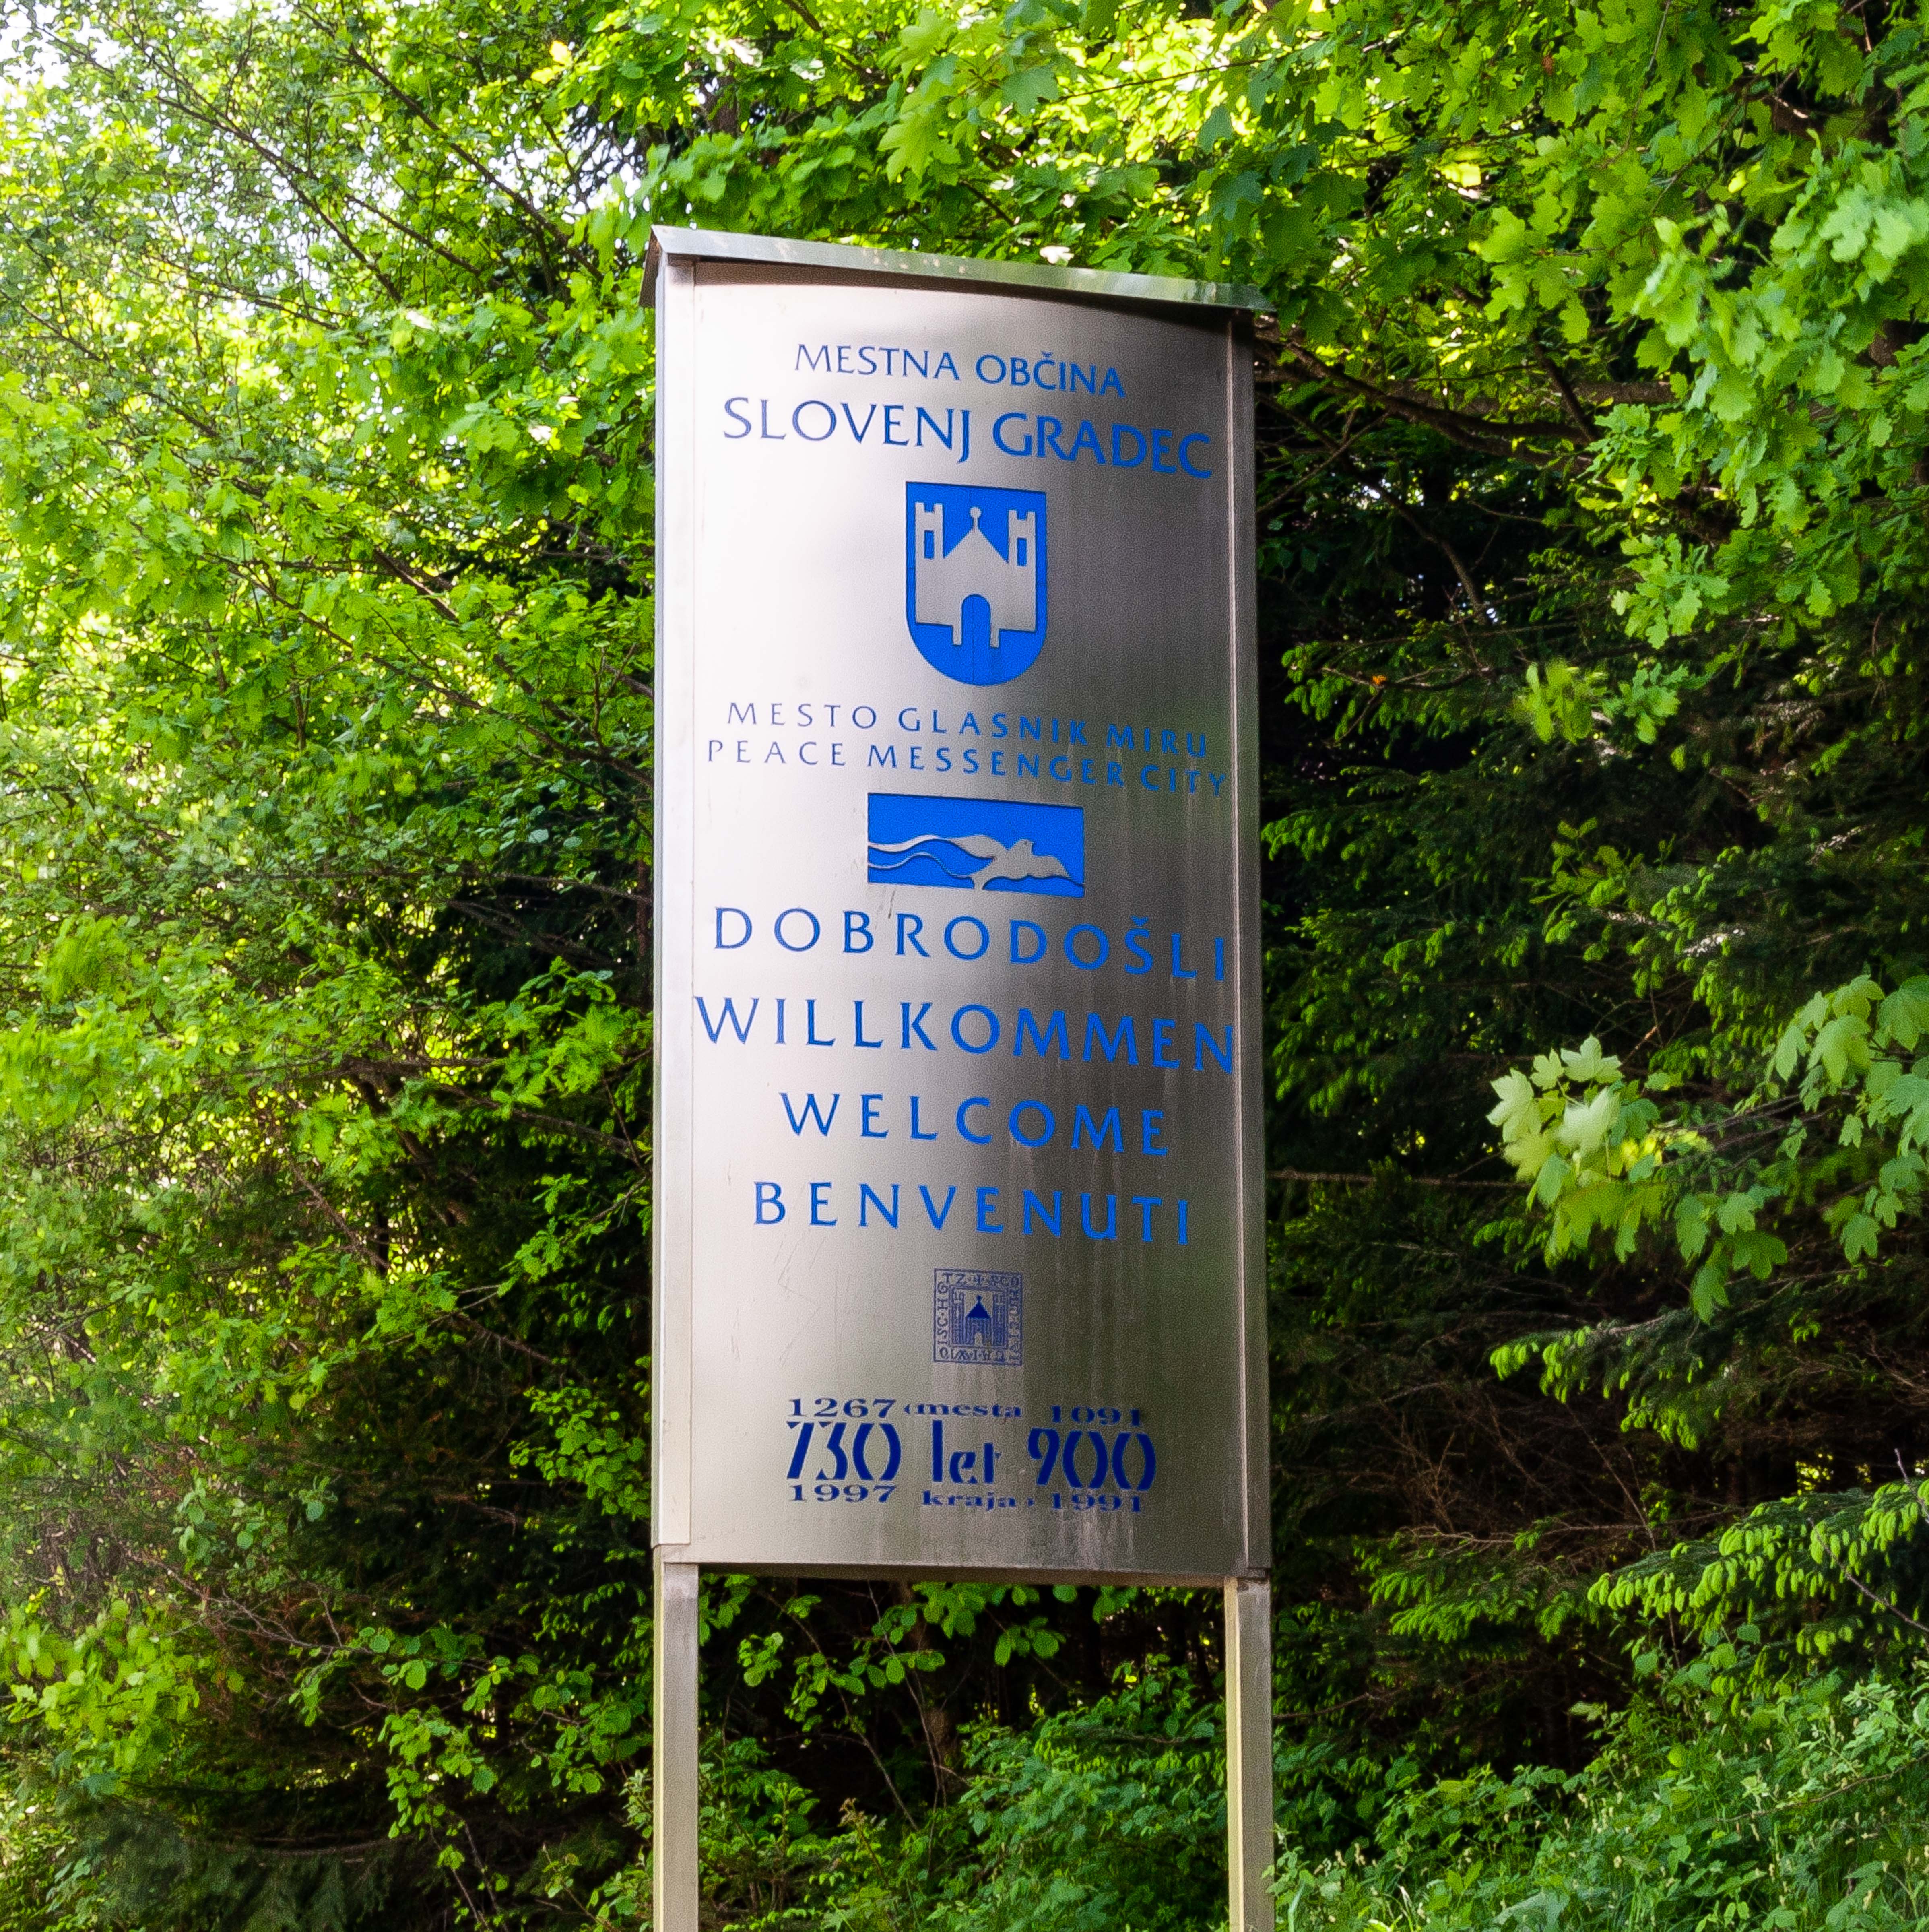 Slovenia, Slovenj Gradec Prov, Dobrodosli Slovenj Gradec Obcina, 2006, IMG 8524